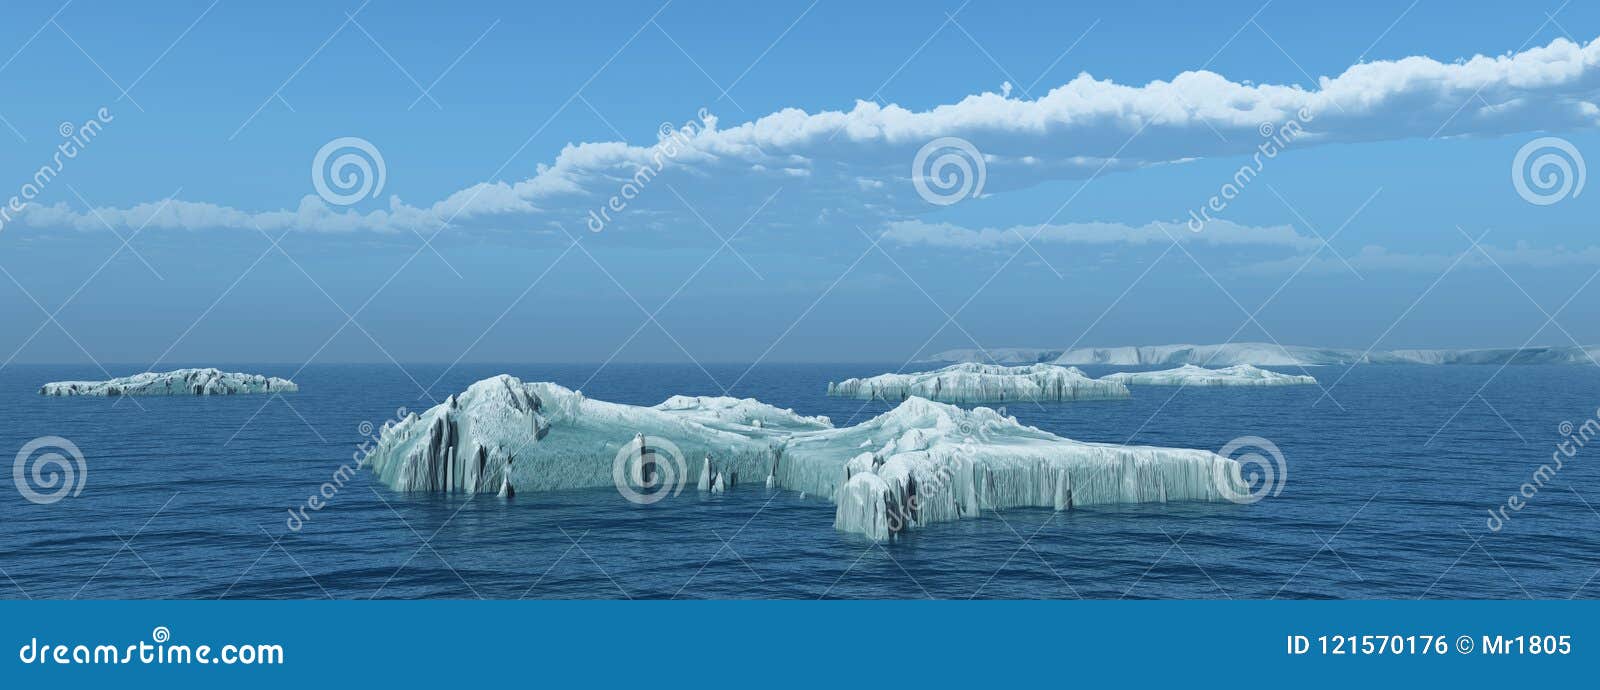 De computer produceerde 3D illustratie met ijsbergen in de open zee